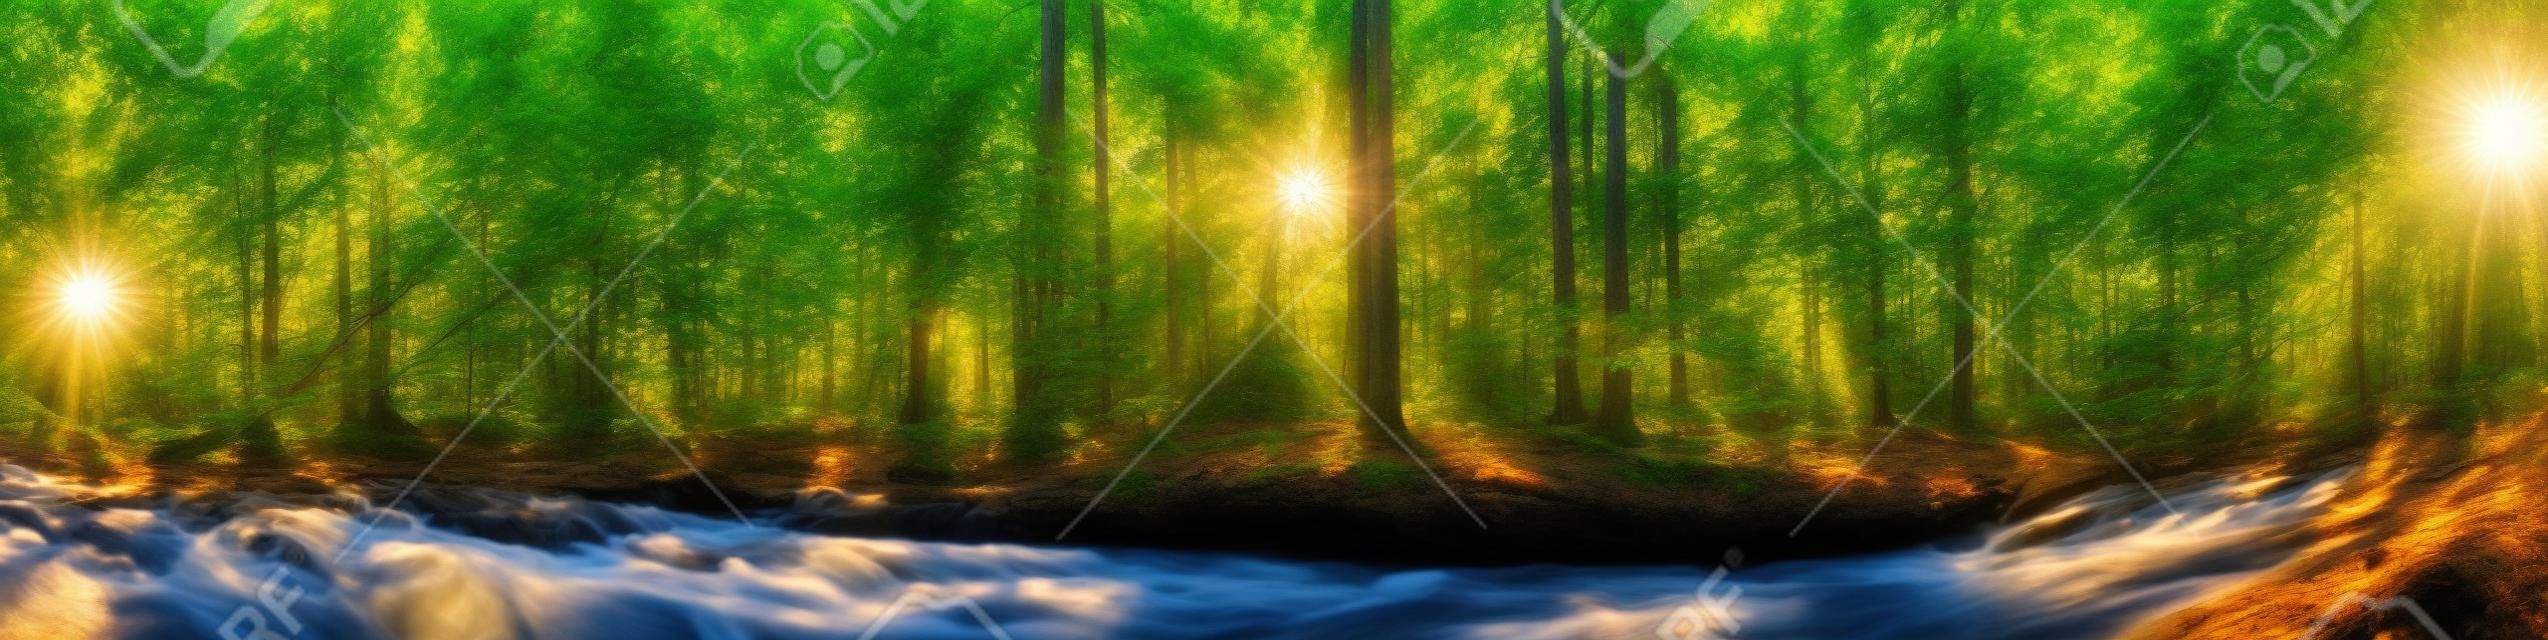 Piękna panorama lasu z drzewami, strumieniem i słońcem